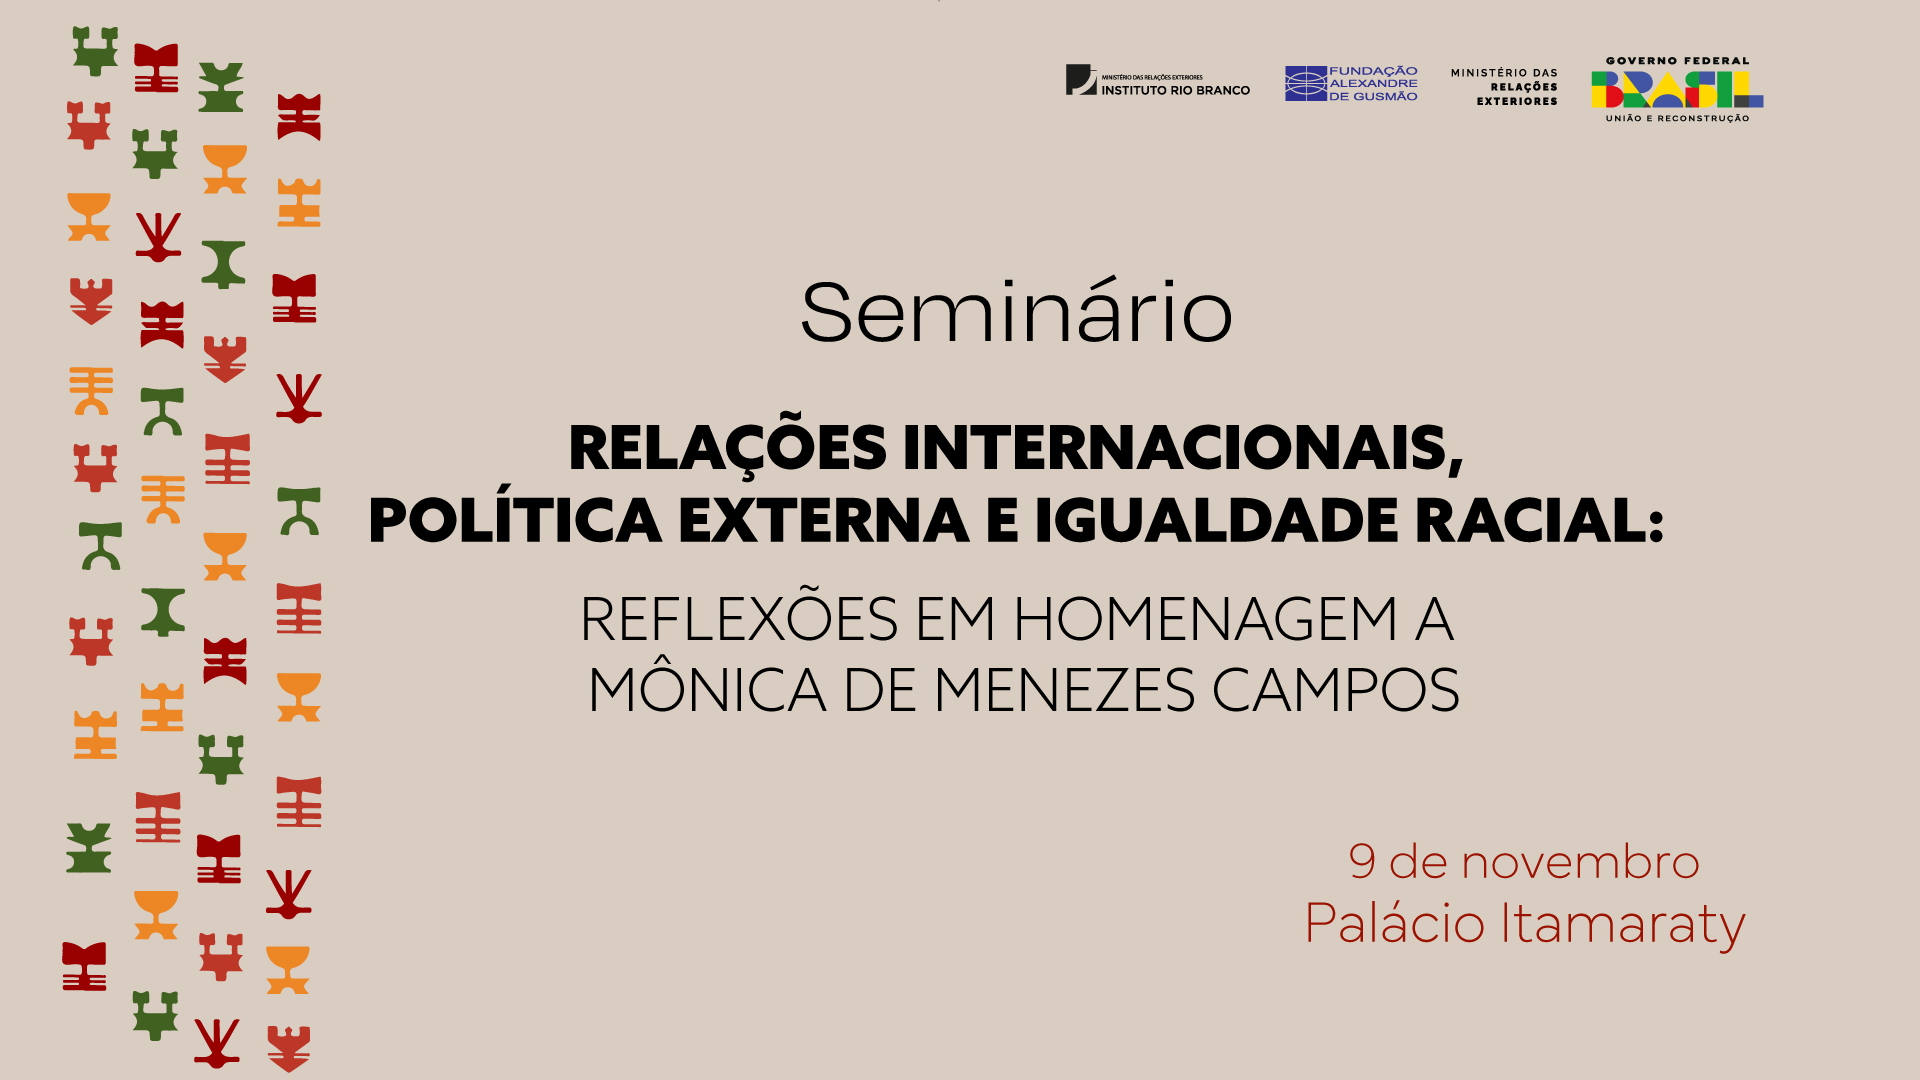 Seminário "Relações Internacionais, Política Externa e Igualdade Racial: Reflexões em Homenagem a Mônica de Menezes Campos” 